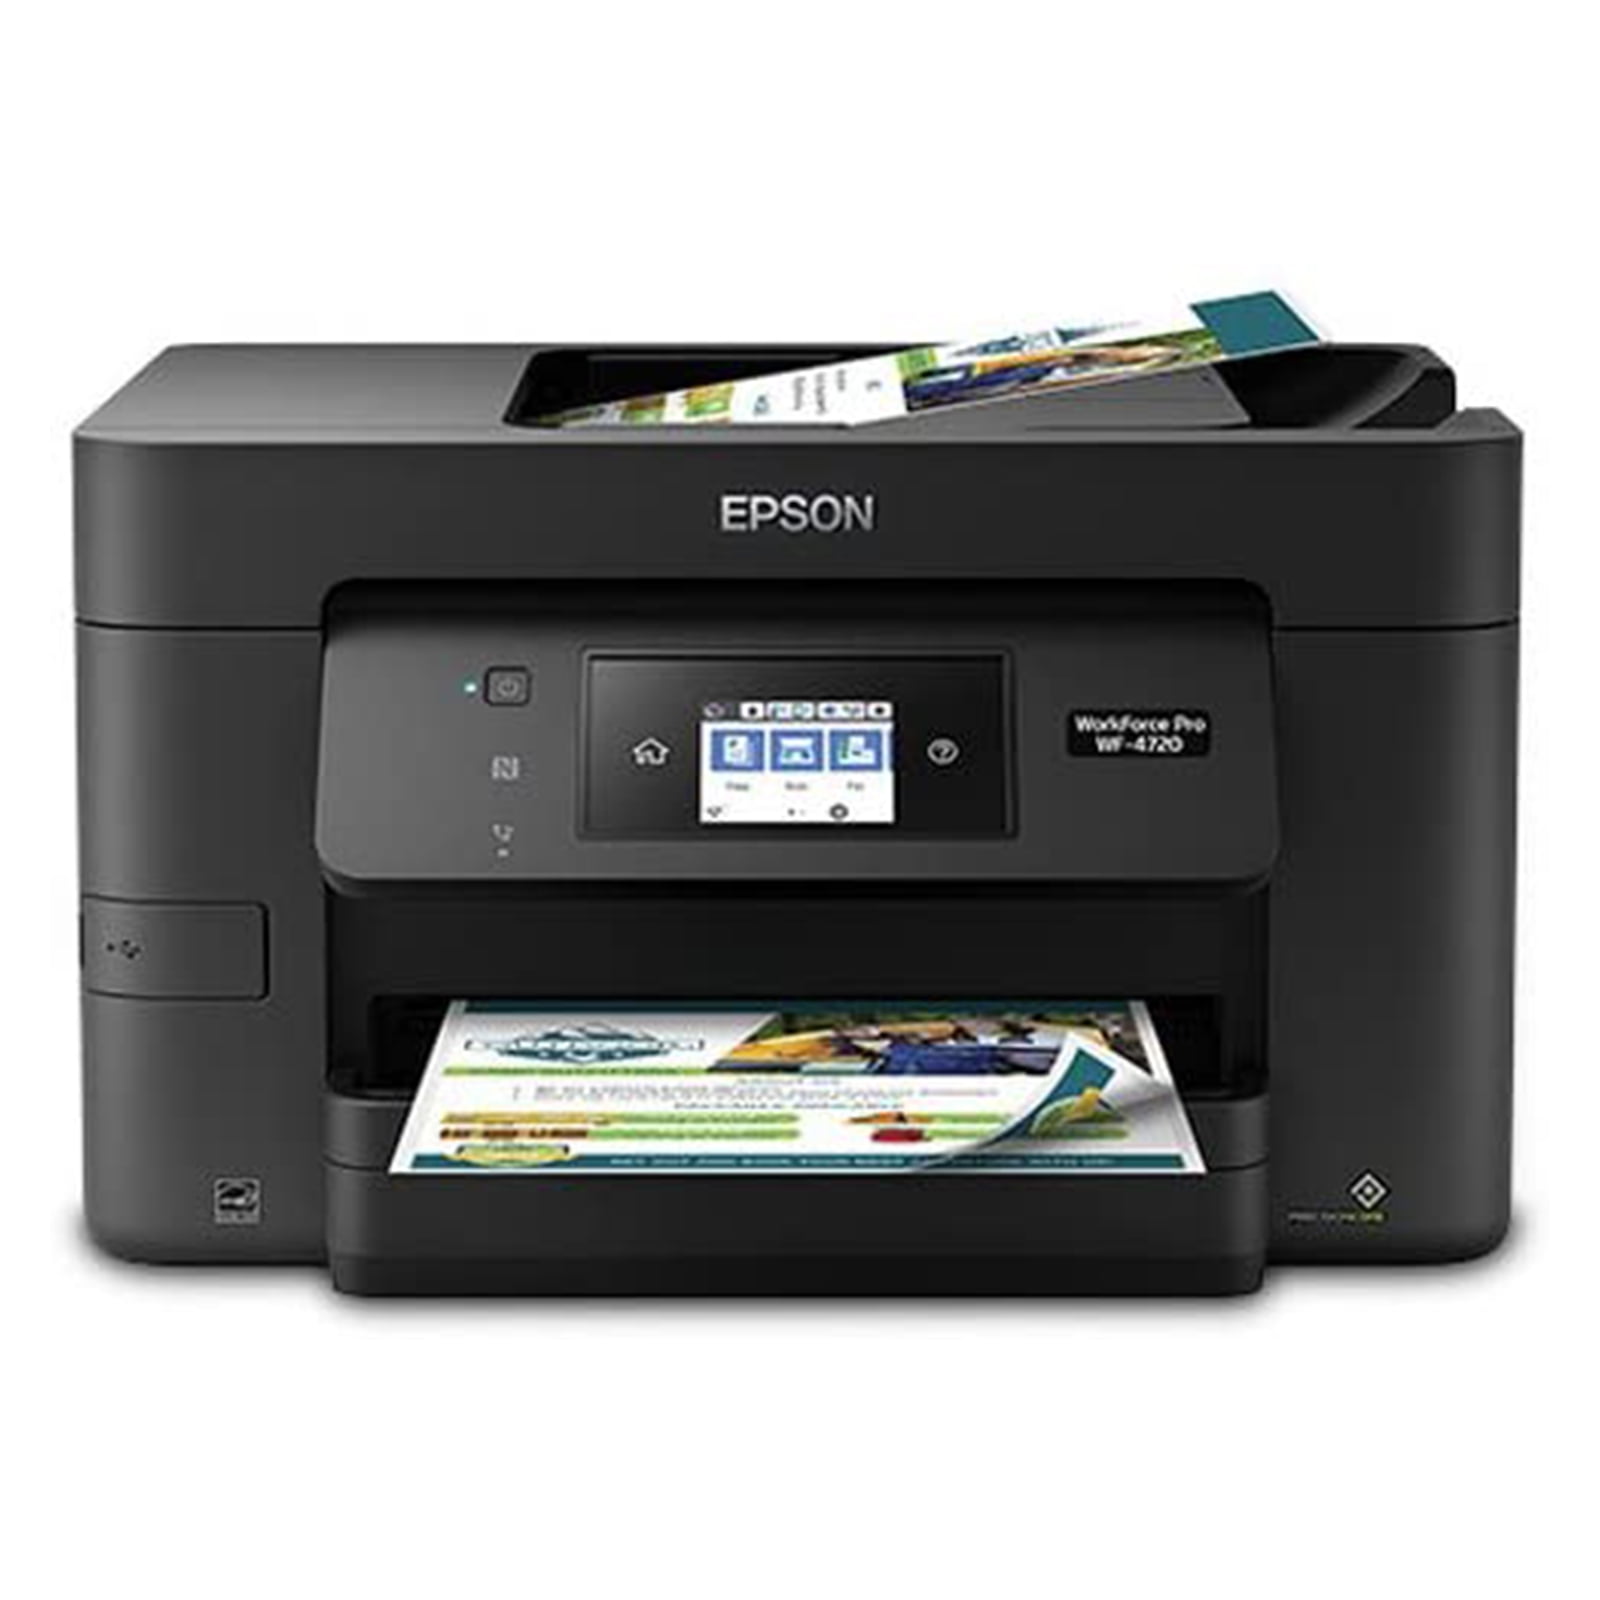 desktop scanner printer copier